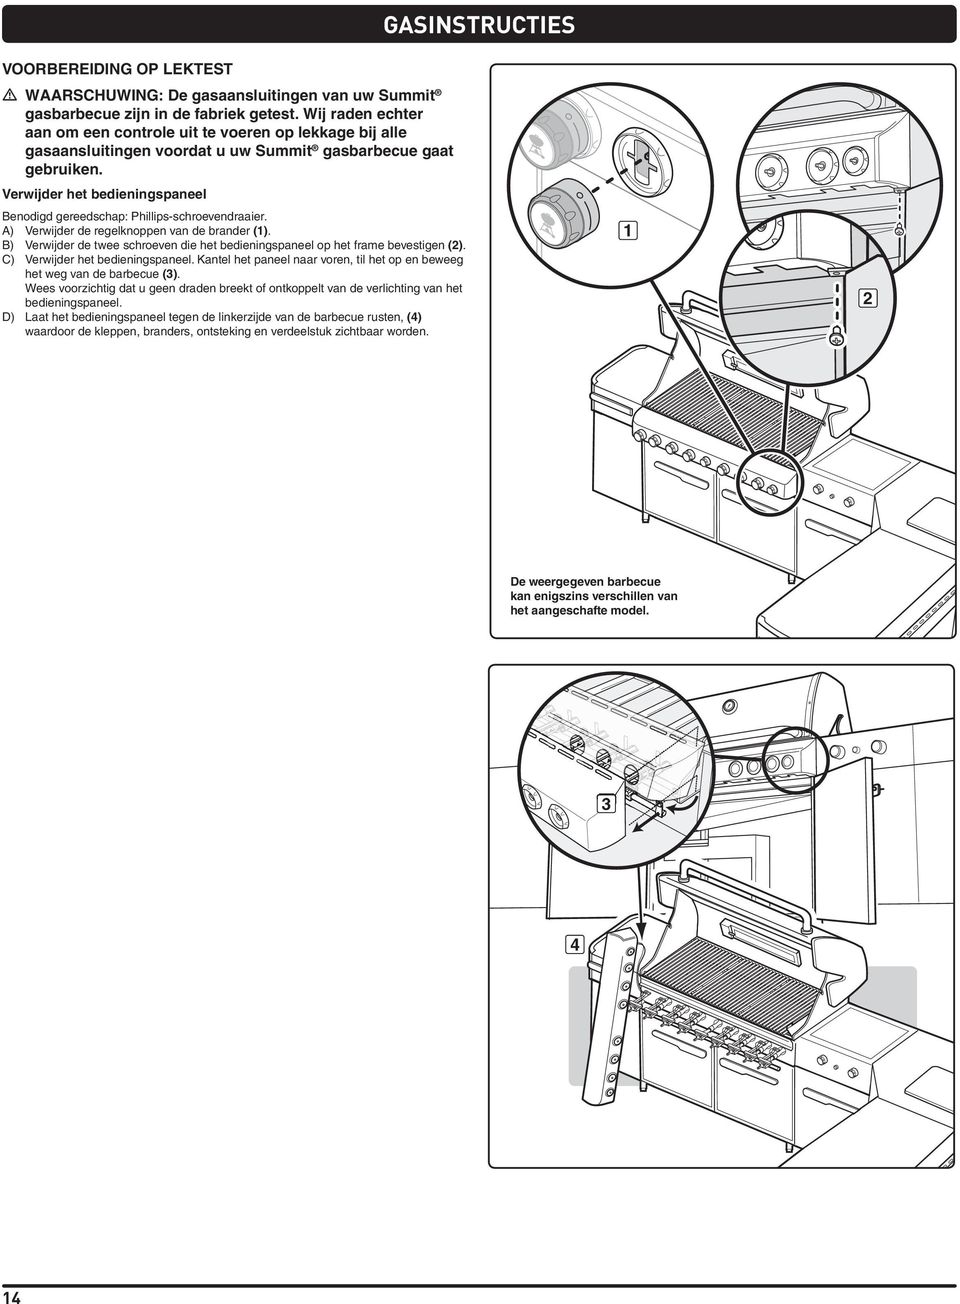 Verwijder het bedieningspaneel Benodigd gereedschap: Phillips-schroevendraaier. A) Verwijder de regelknoppen van de brander ().